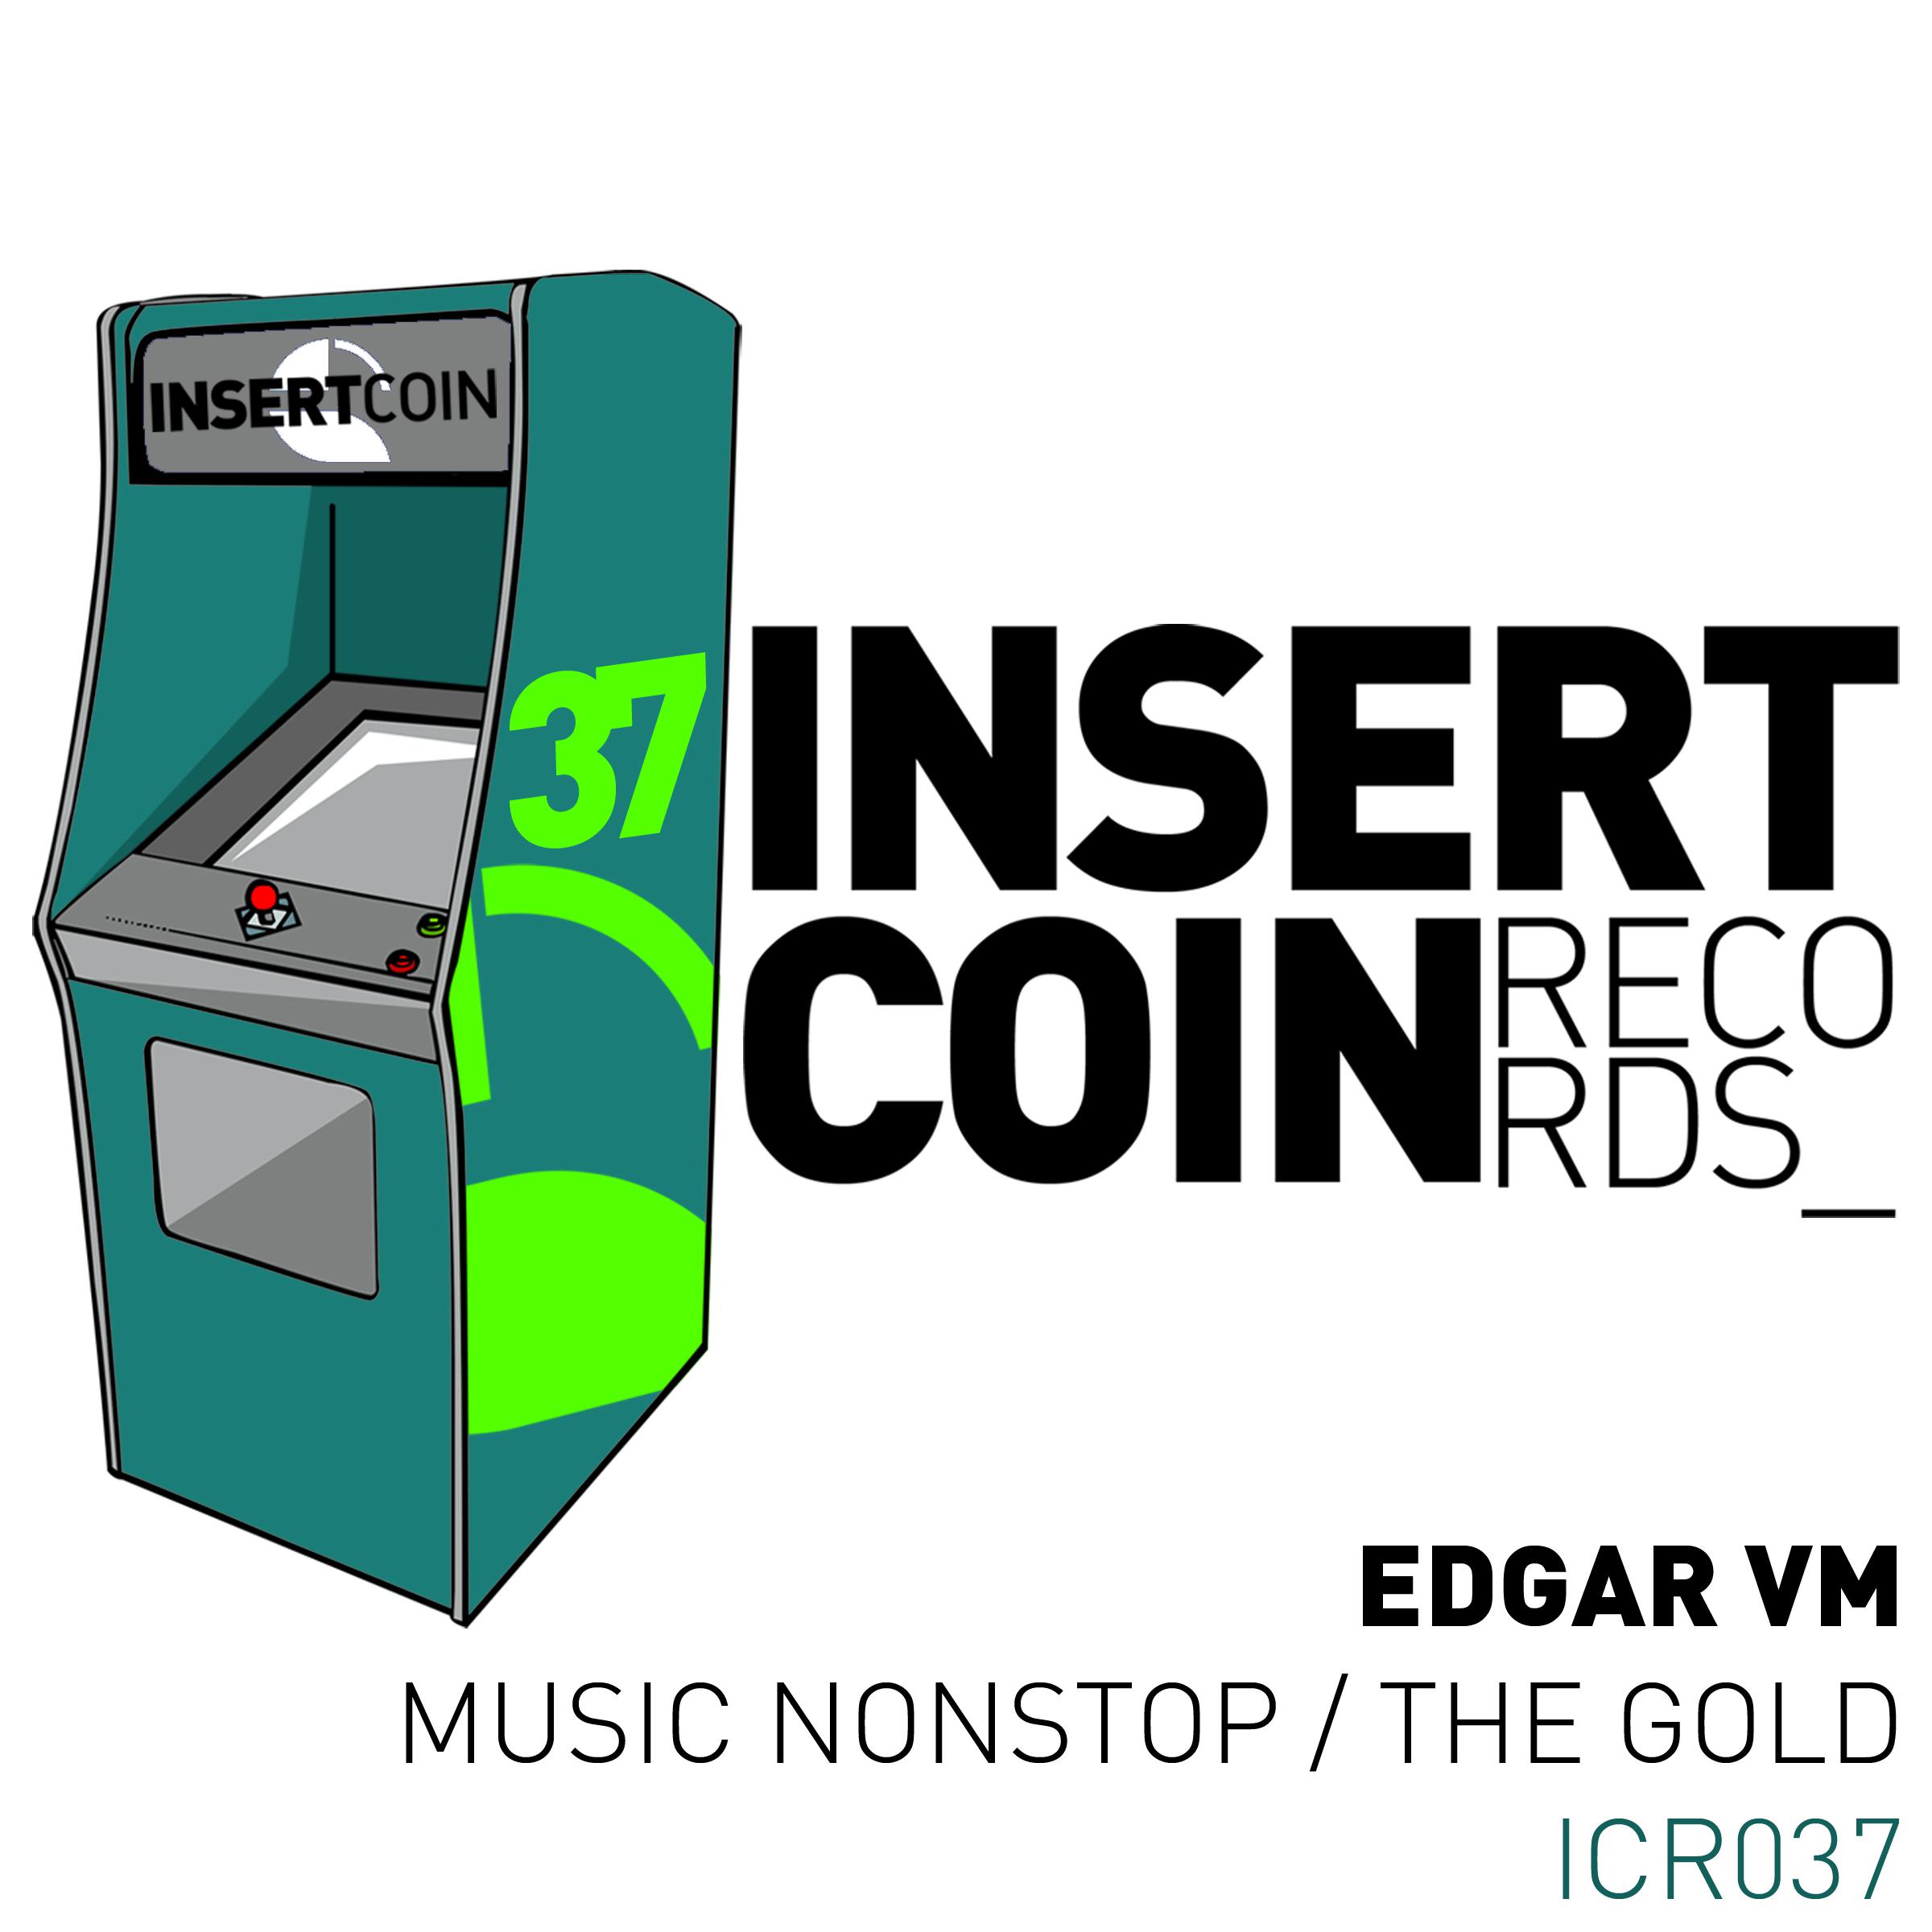 Edgar VM - Music Nonstop